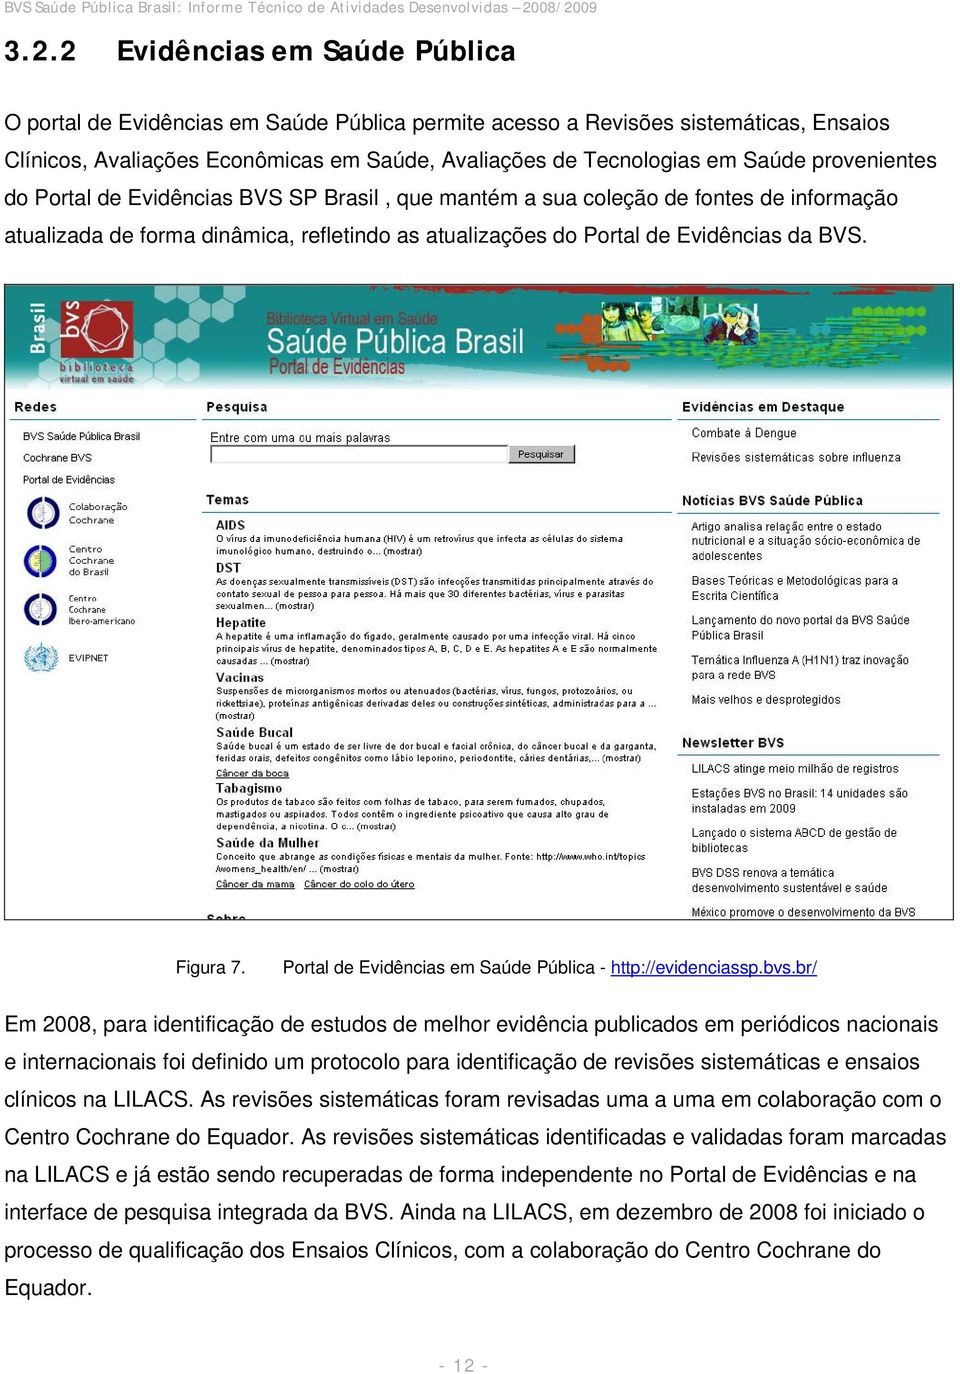 Portal de Evidências em Saúde Pública - http://evidenciassp.bvs.